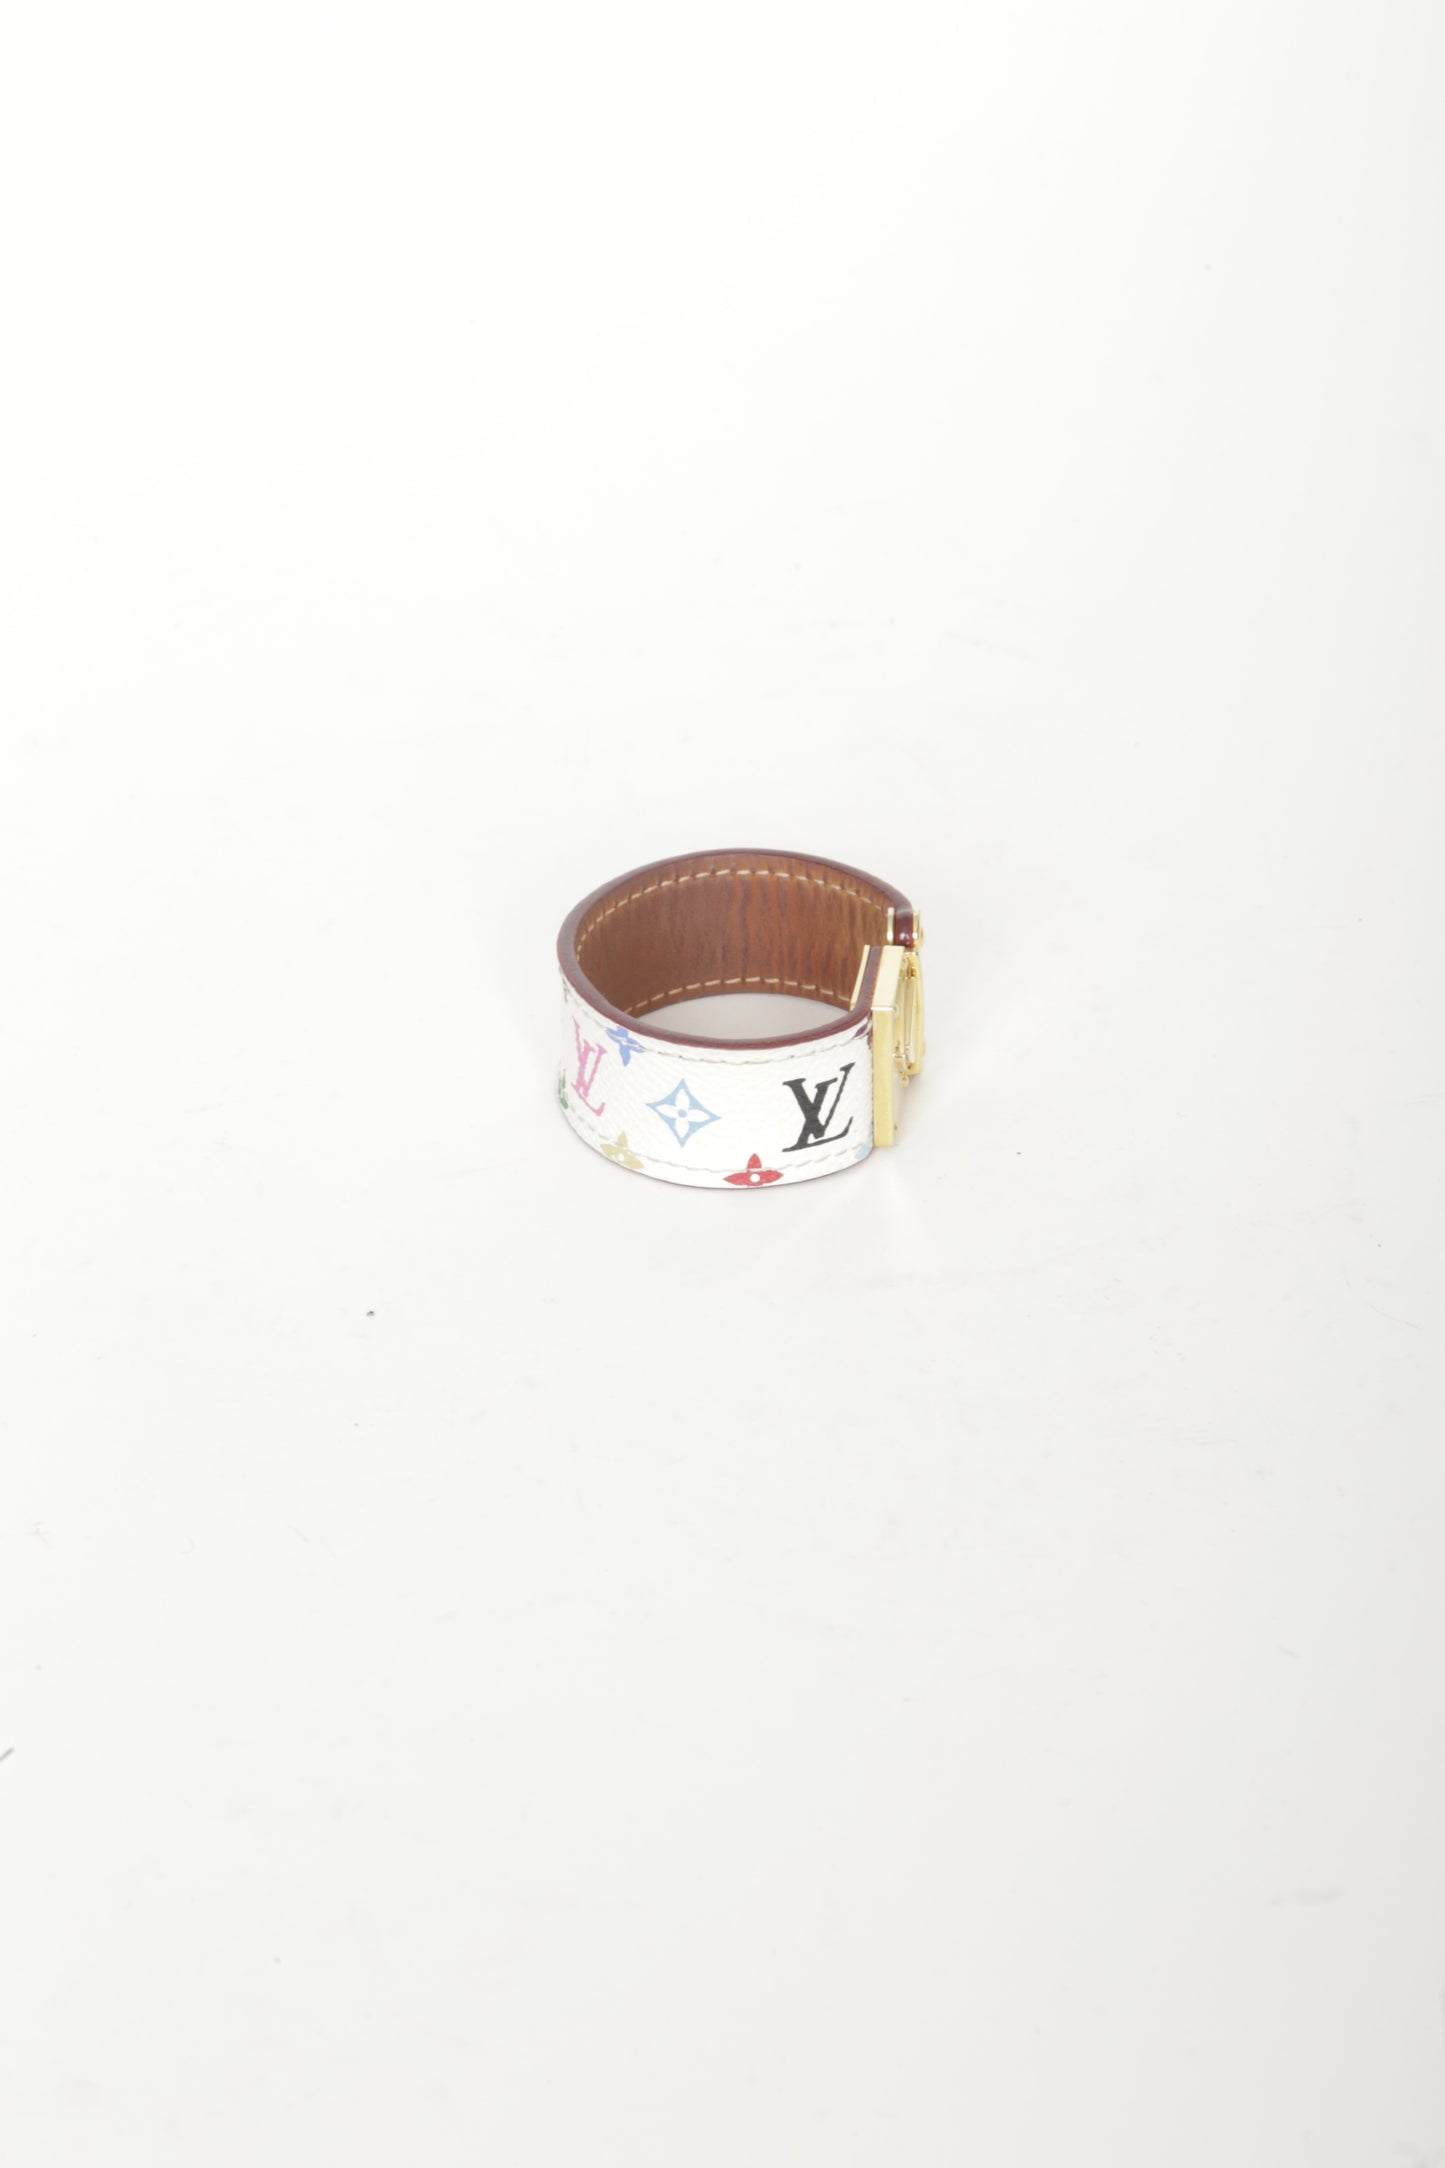 Louis Vuitton Unisex White Bracelet Size O/S